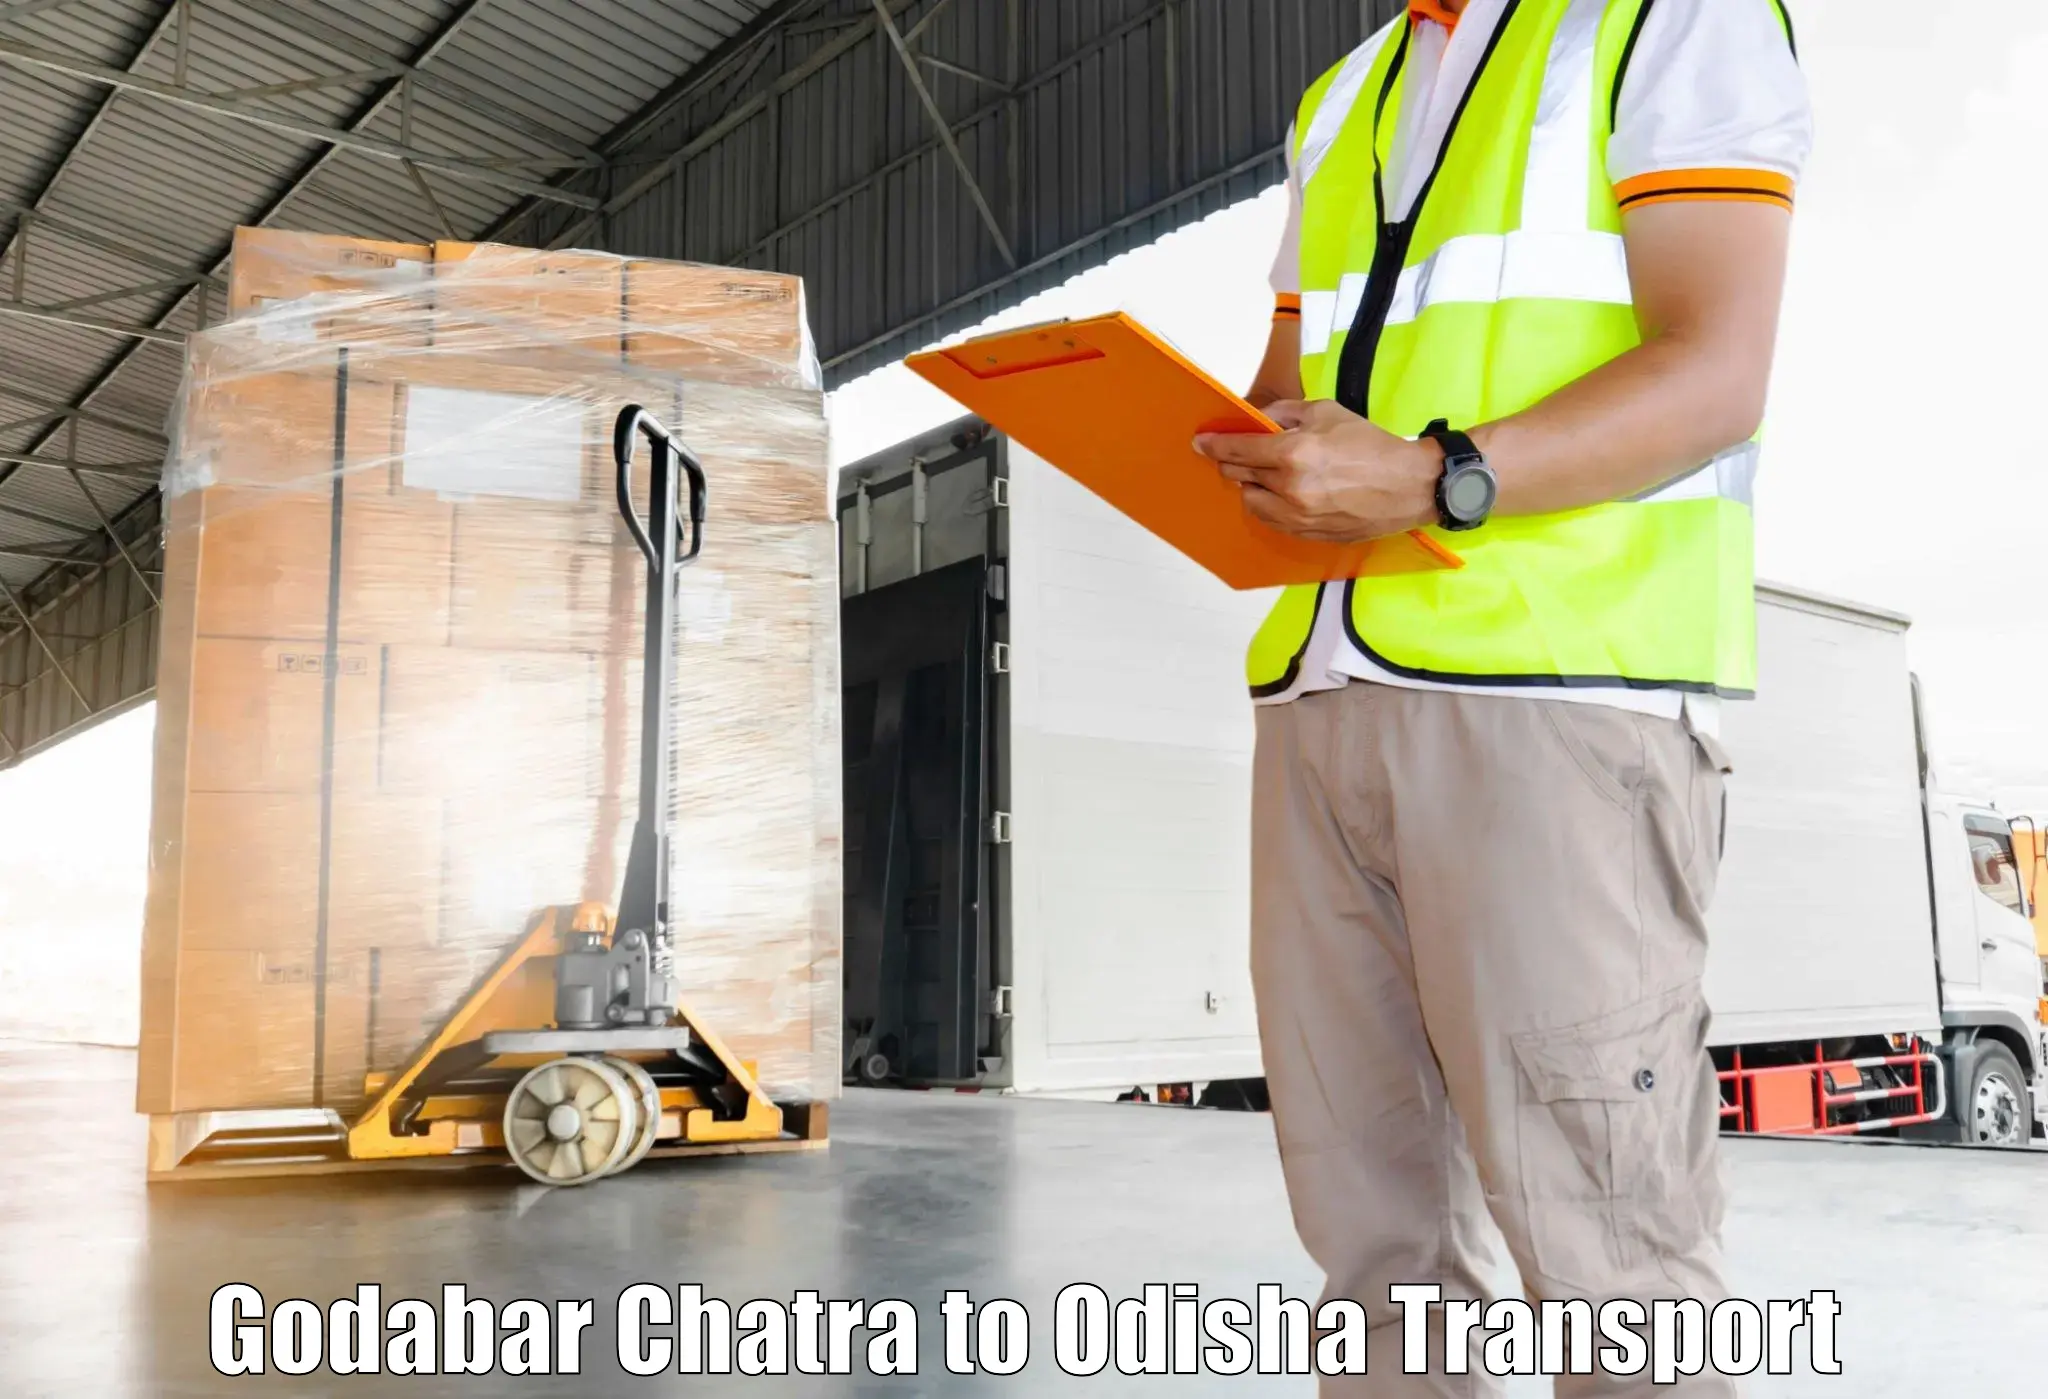 Lorry transport service Godabar Chatra to Kakiriguma